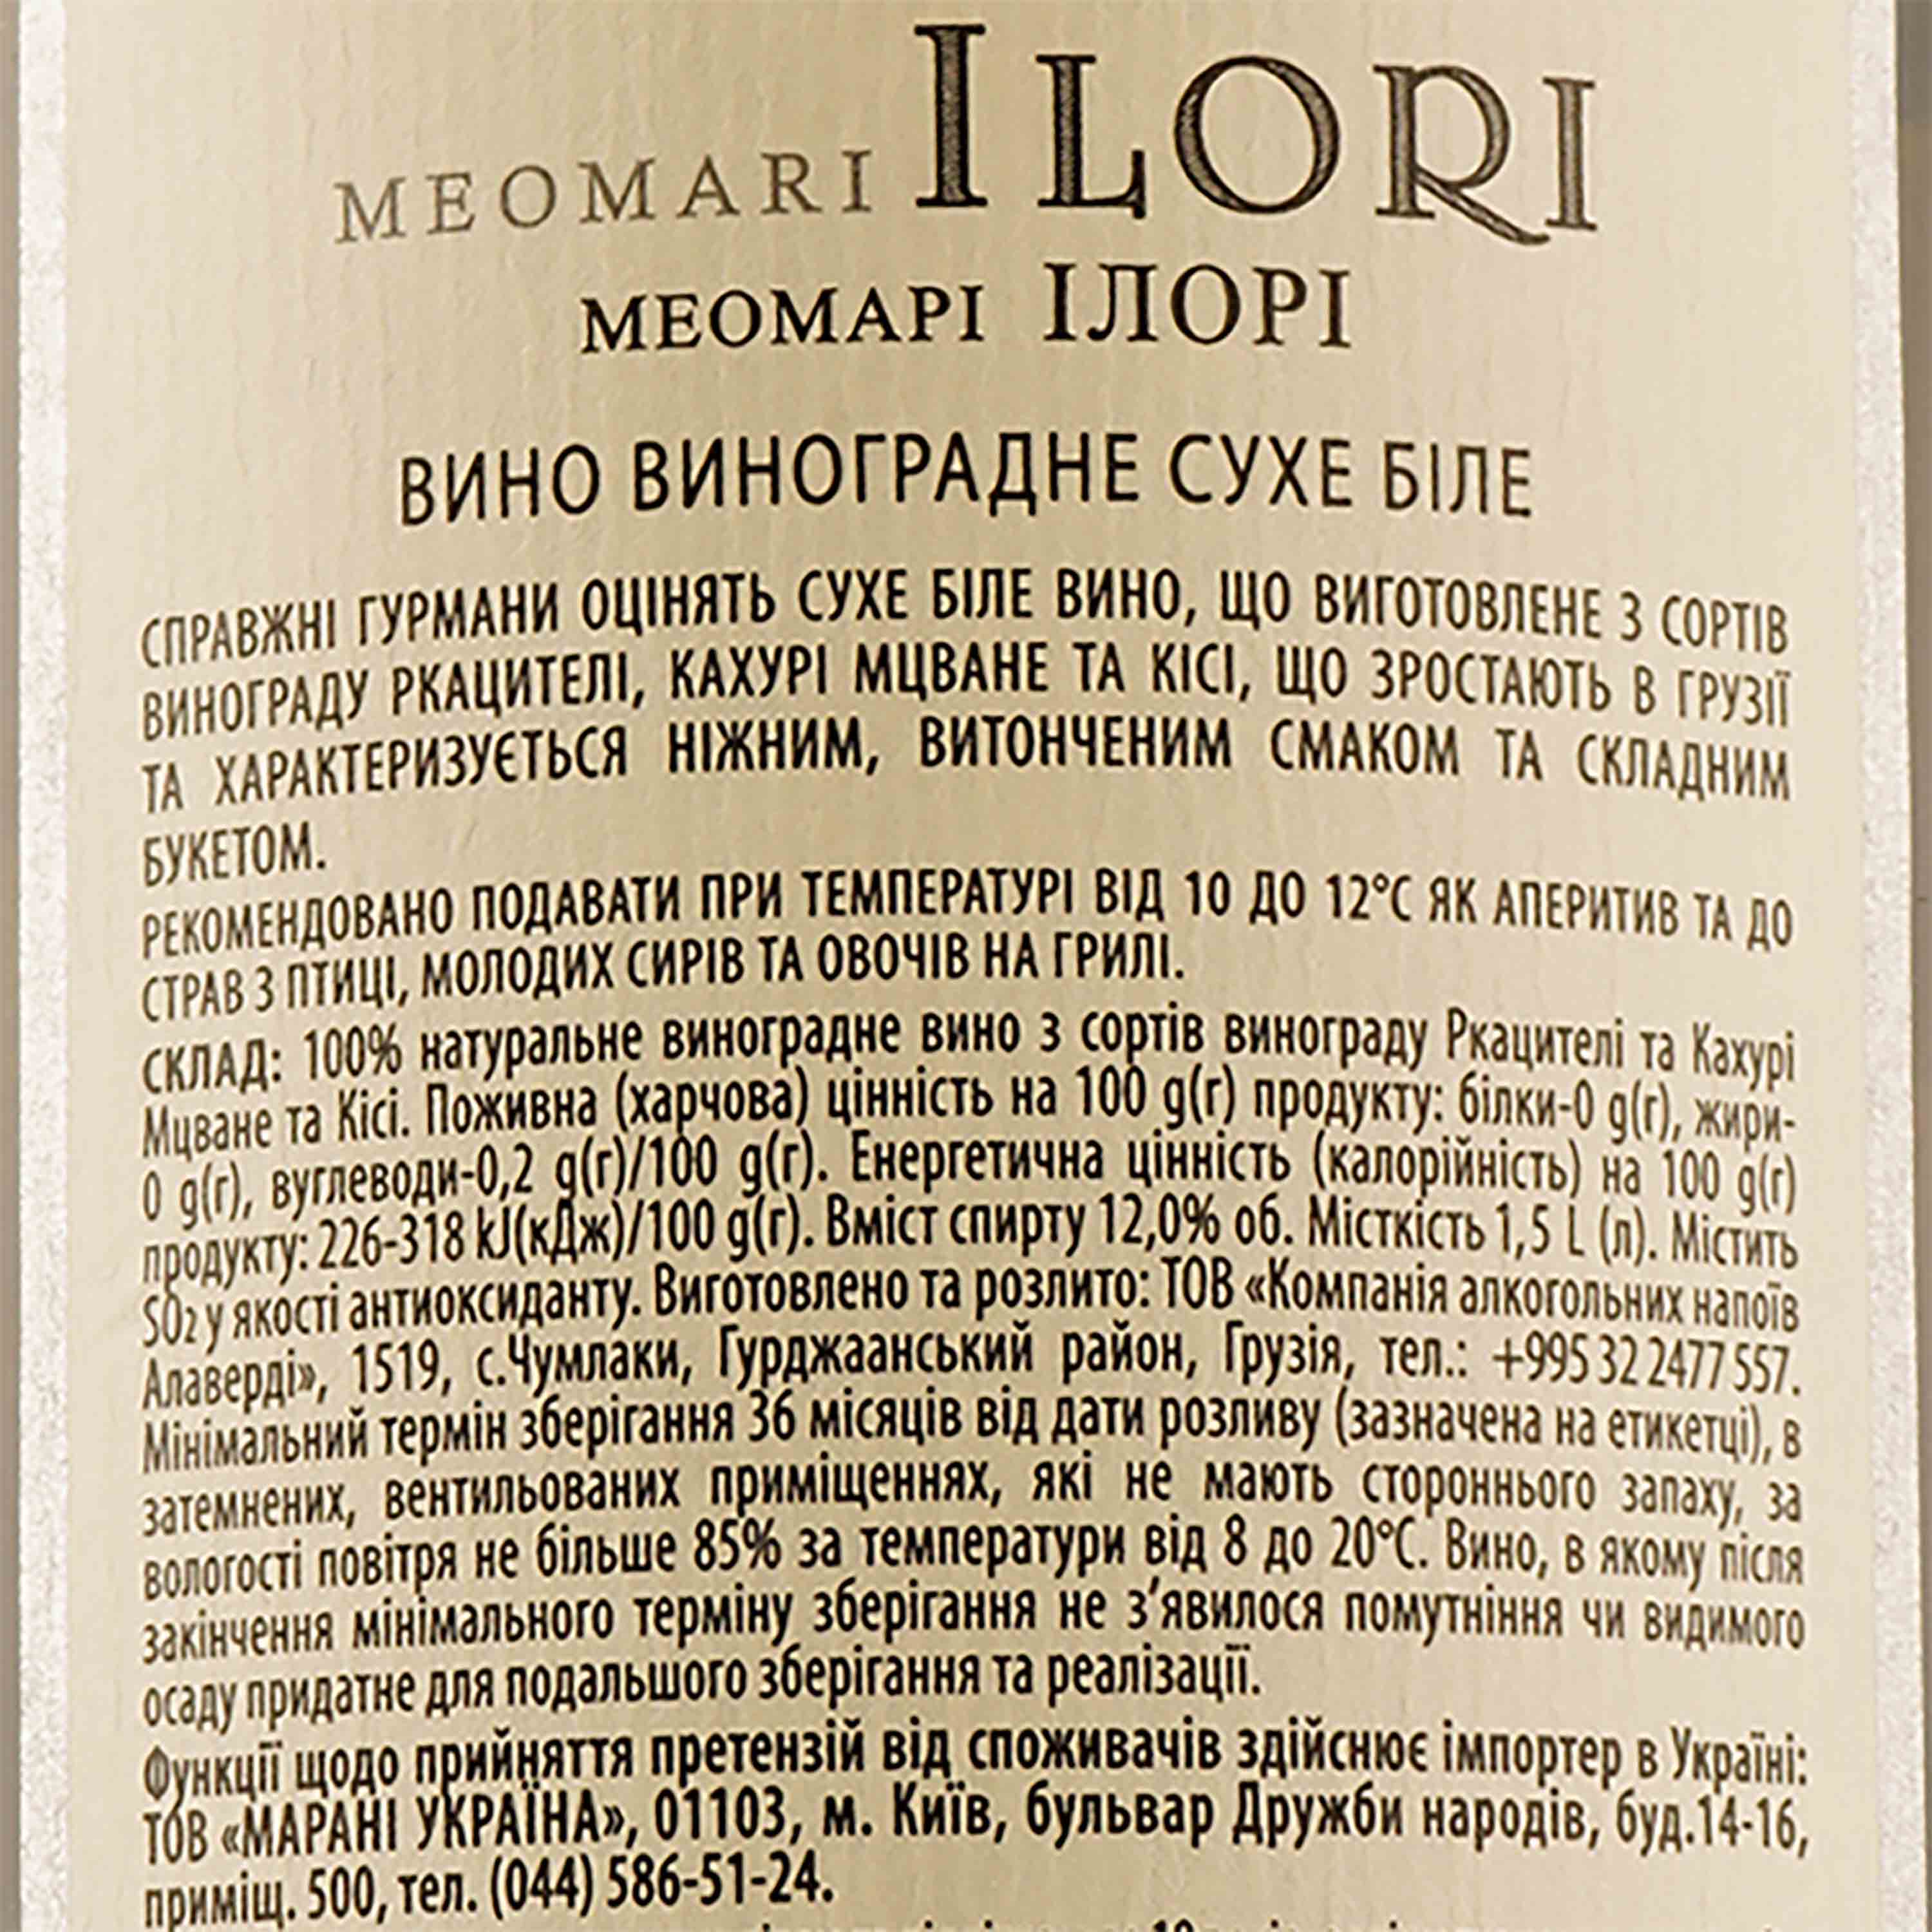 Вино Meomari Ilori, біле, сухе, 12%, 1,5 л - фото 3